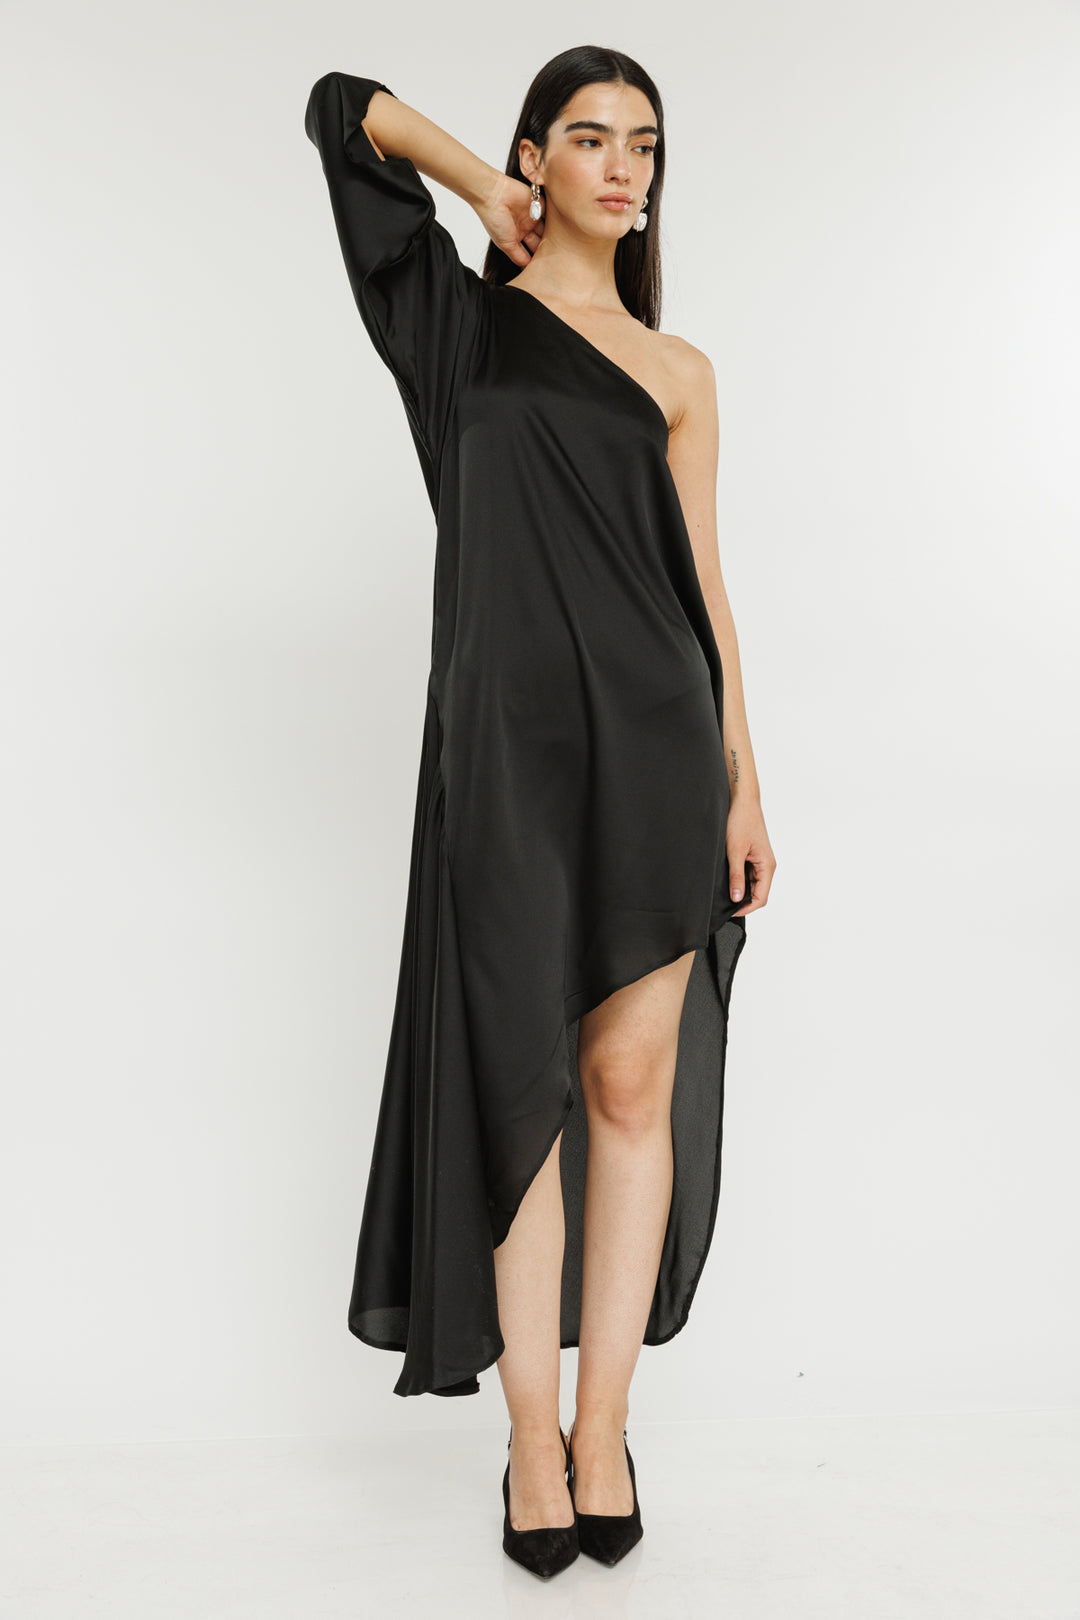 שמלת מידי וואן שולדר Nersic בצבע שחור